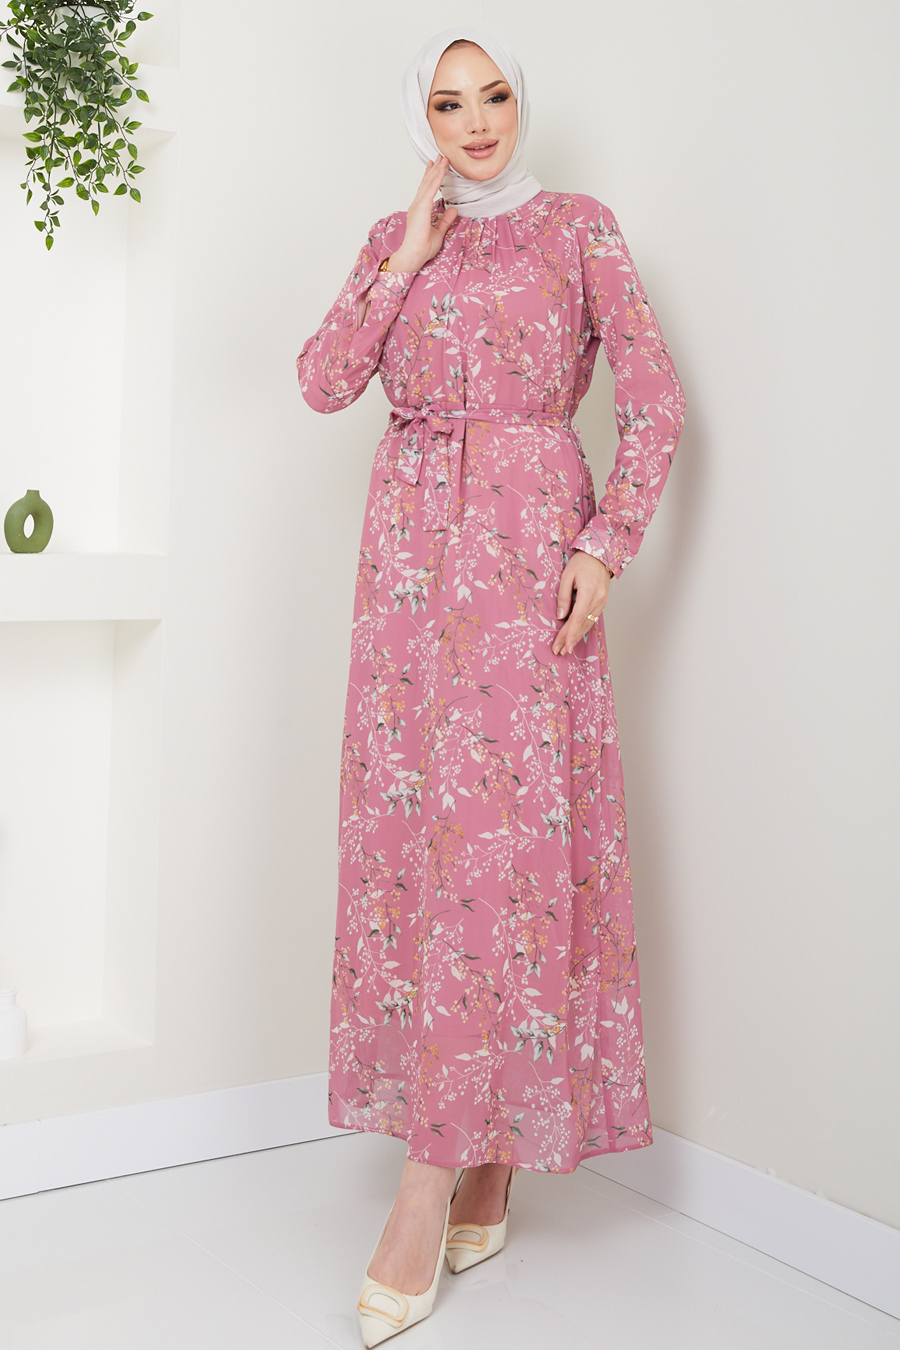 Flower Patterned Dress - ROSE COLOR 